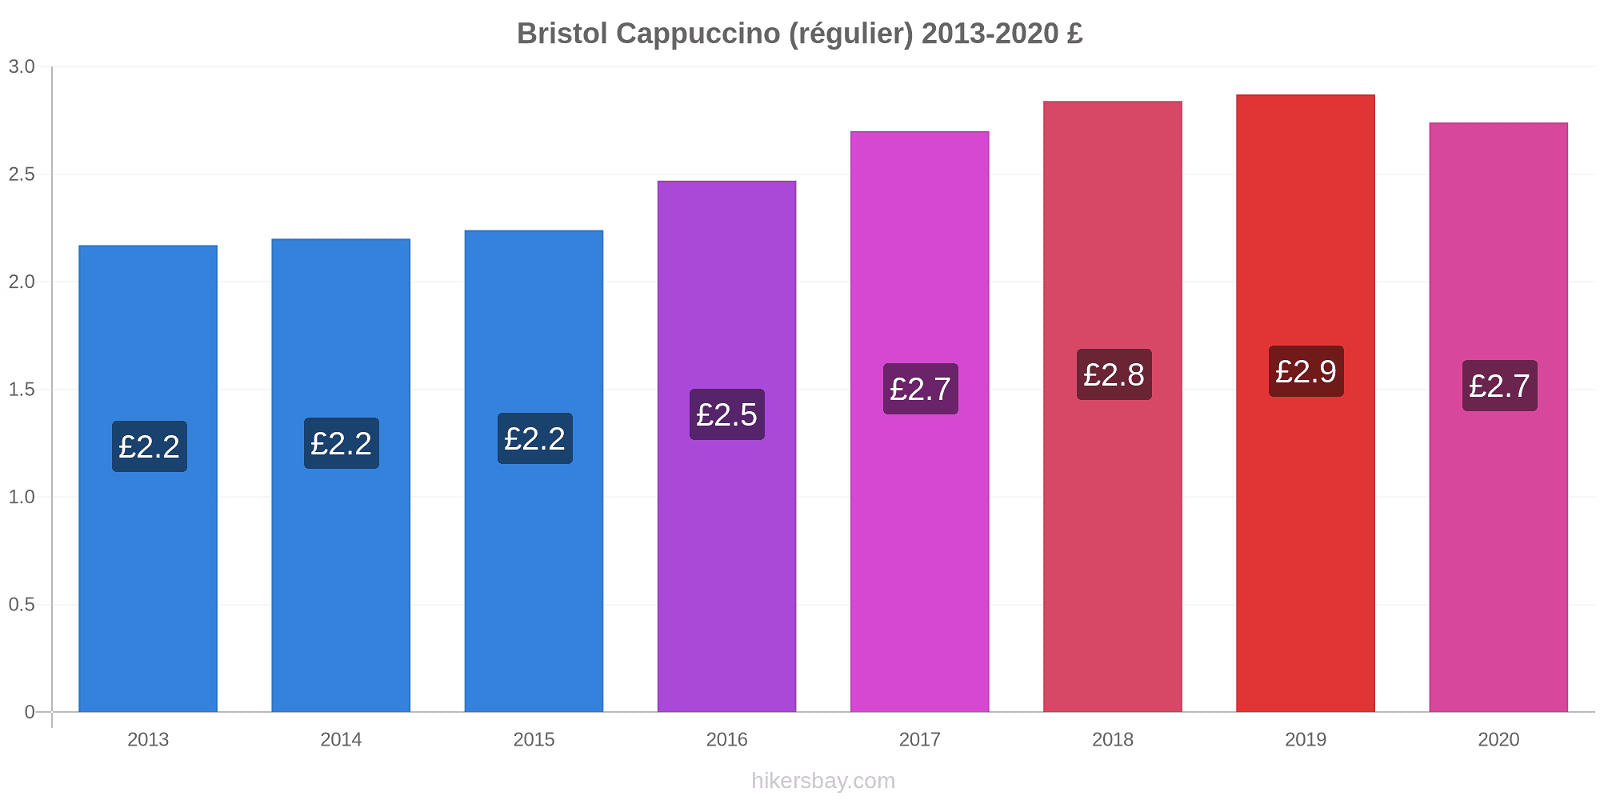 Bristol changements de prix Cappuccino (régulier) hikersbay.com